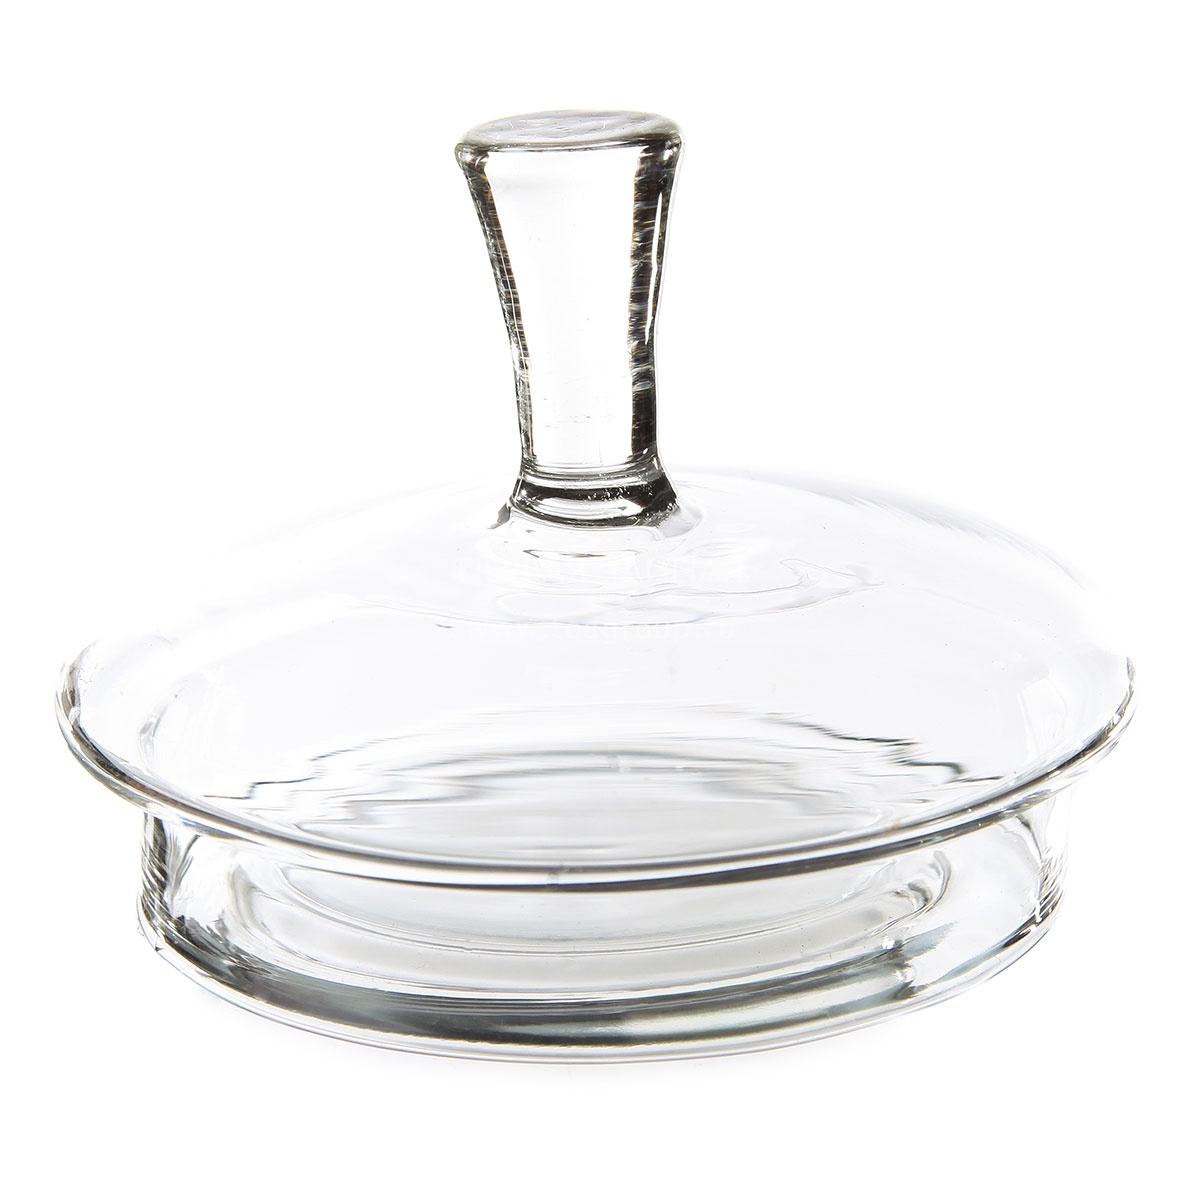 Купить крышку стеклянную в спб. Крышка для чайника 600мл принц. Стеклянная крышка для заварочного чайника. Крышка для стеклянного чайника. Крышка для заварочного чайника стекло.